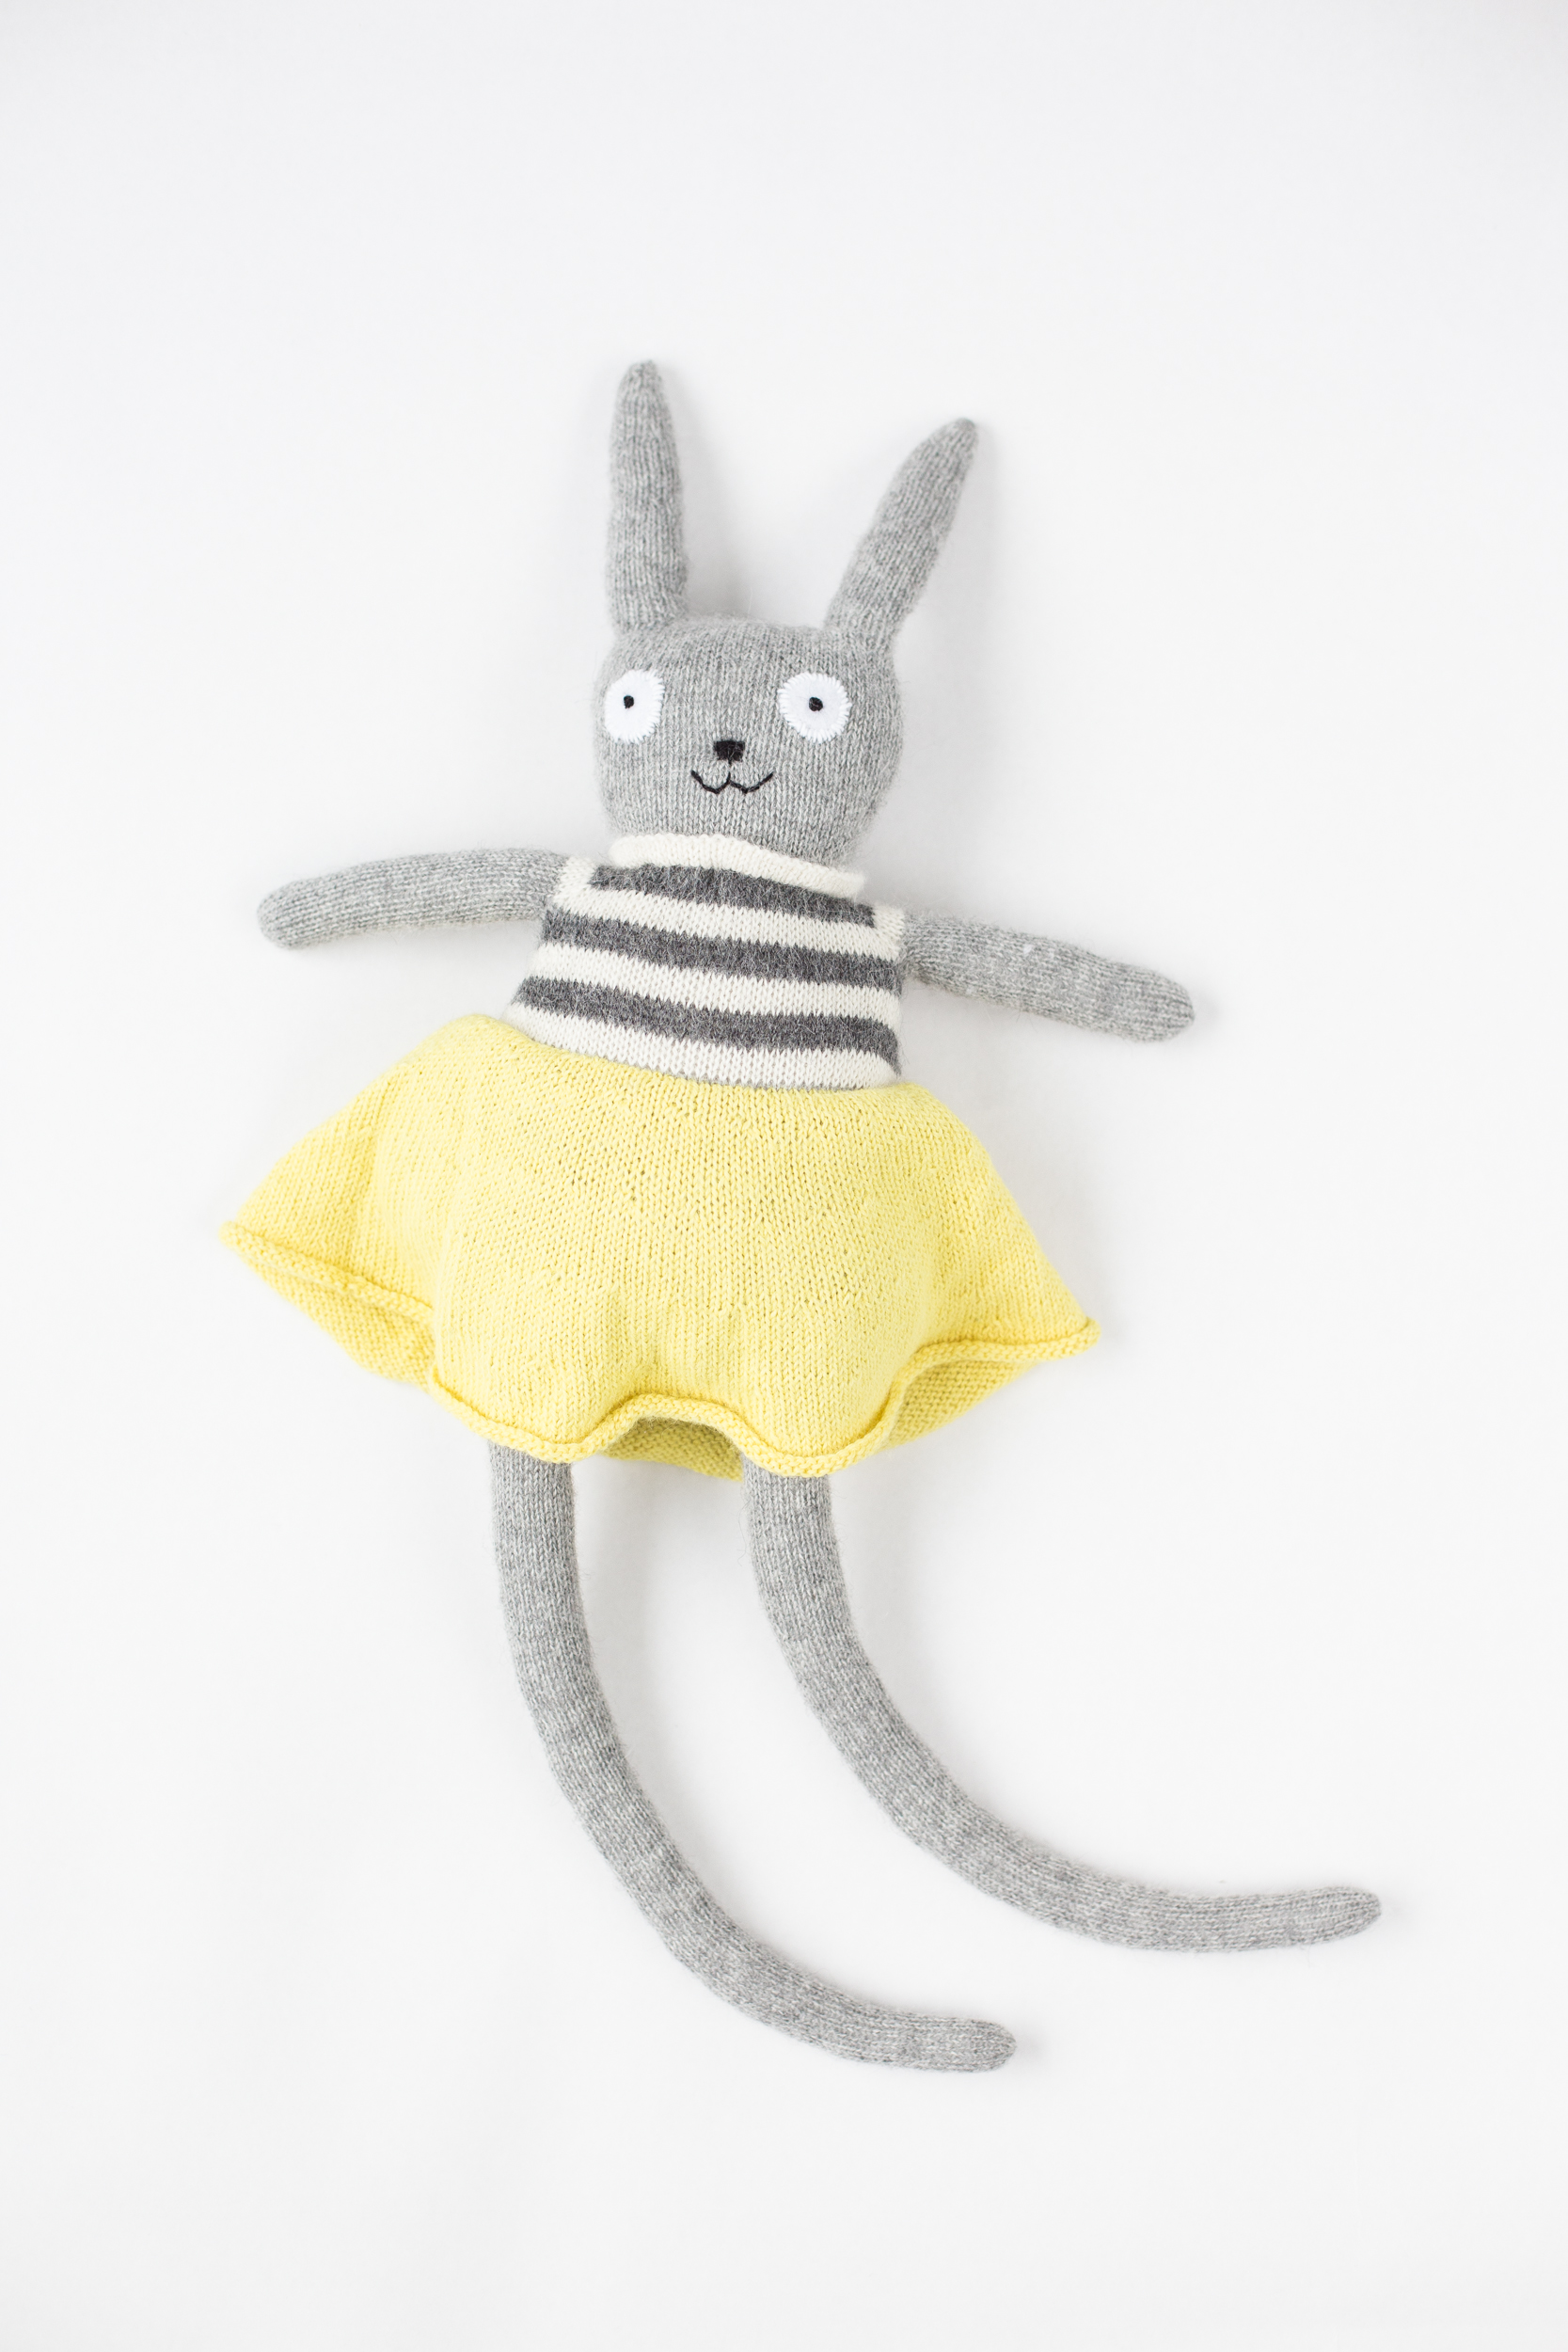 Handmade knittingpattern kidstoy bunny